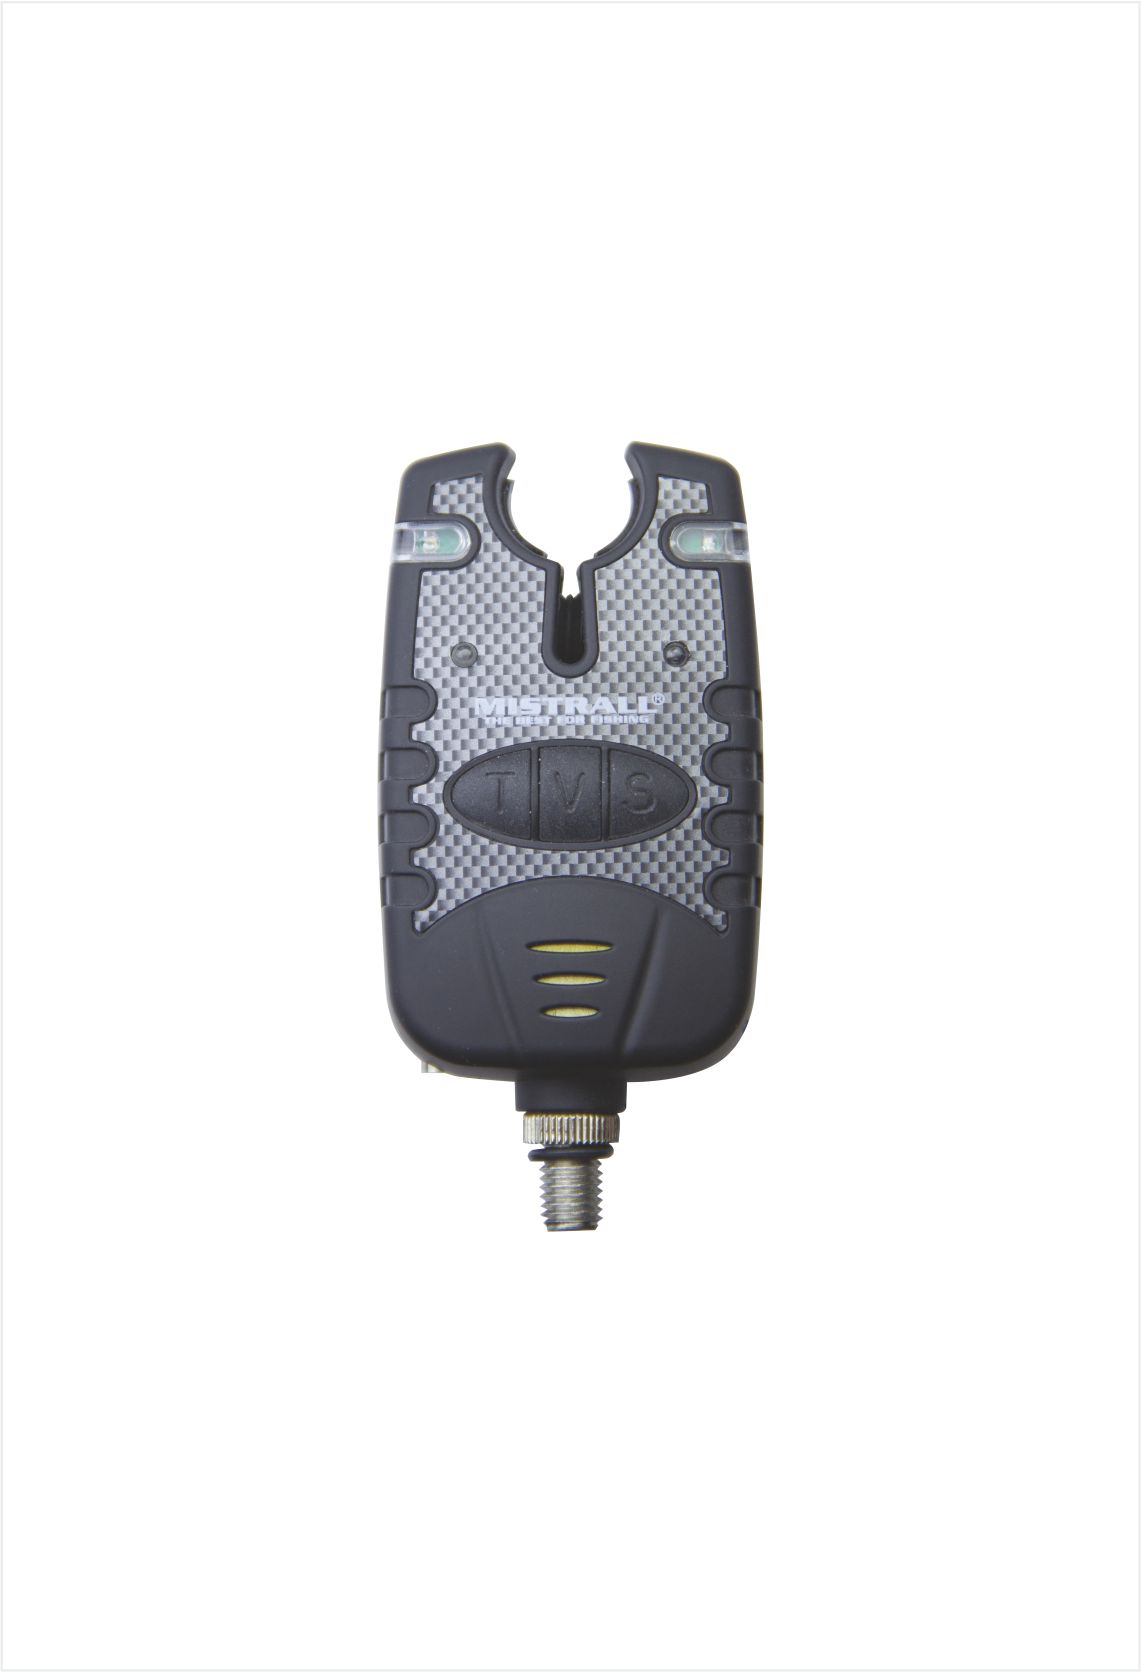 Mistrall signalizátor záběru RS-MAM6008278